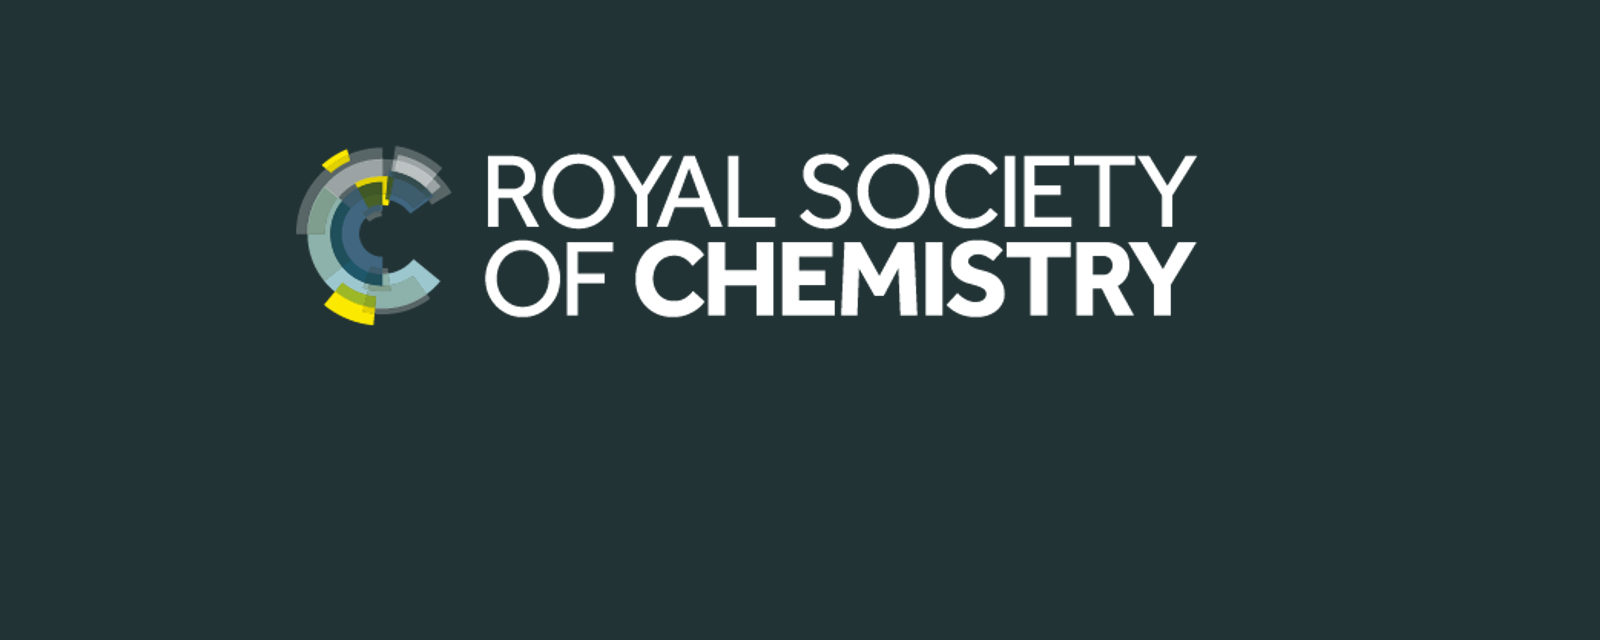 Royal Society of Chemistry 2